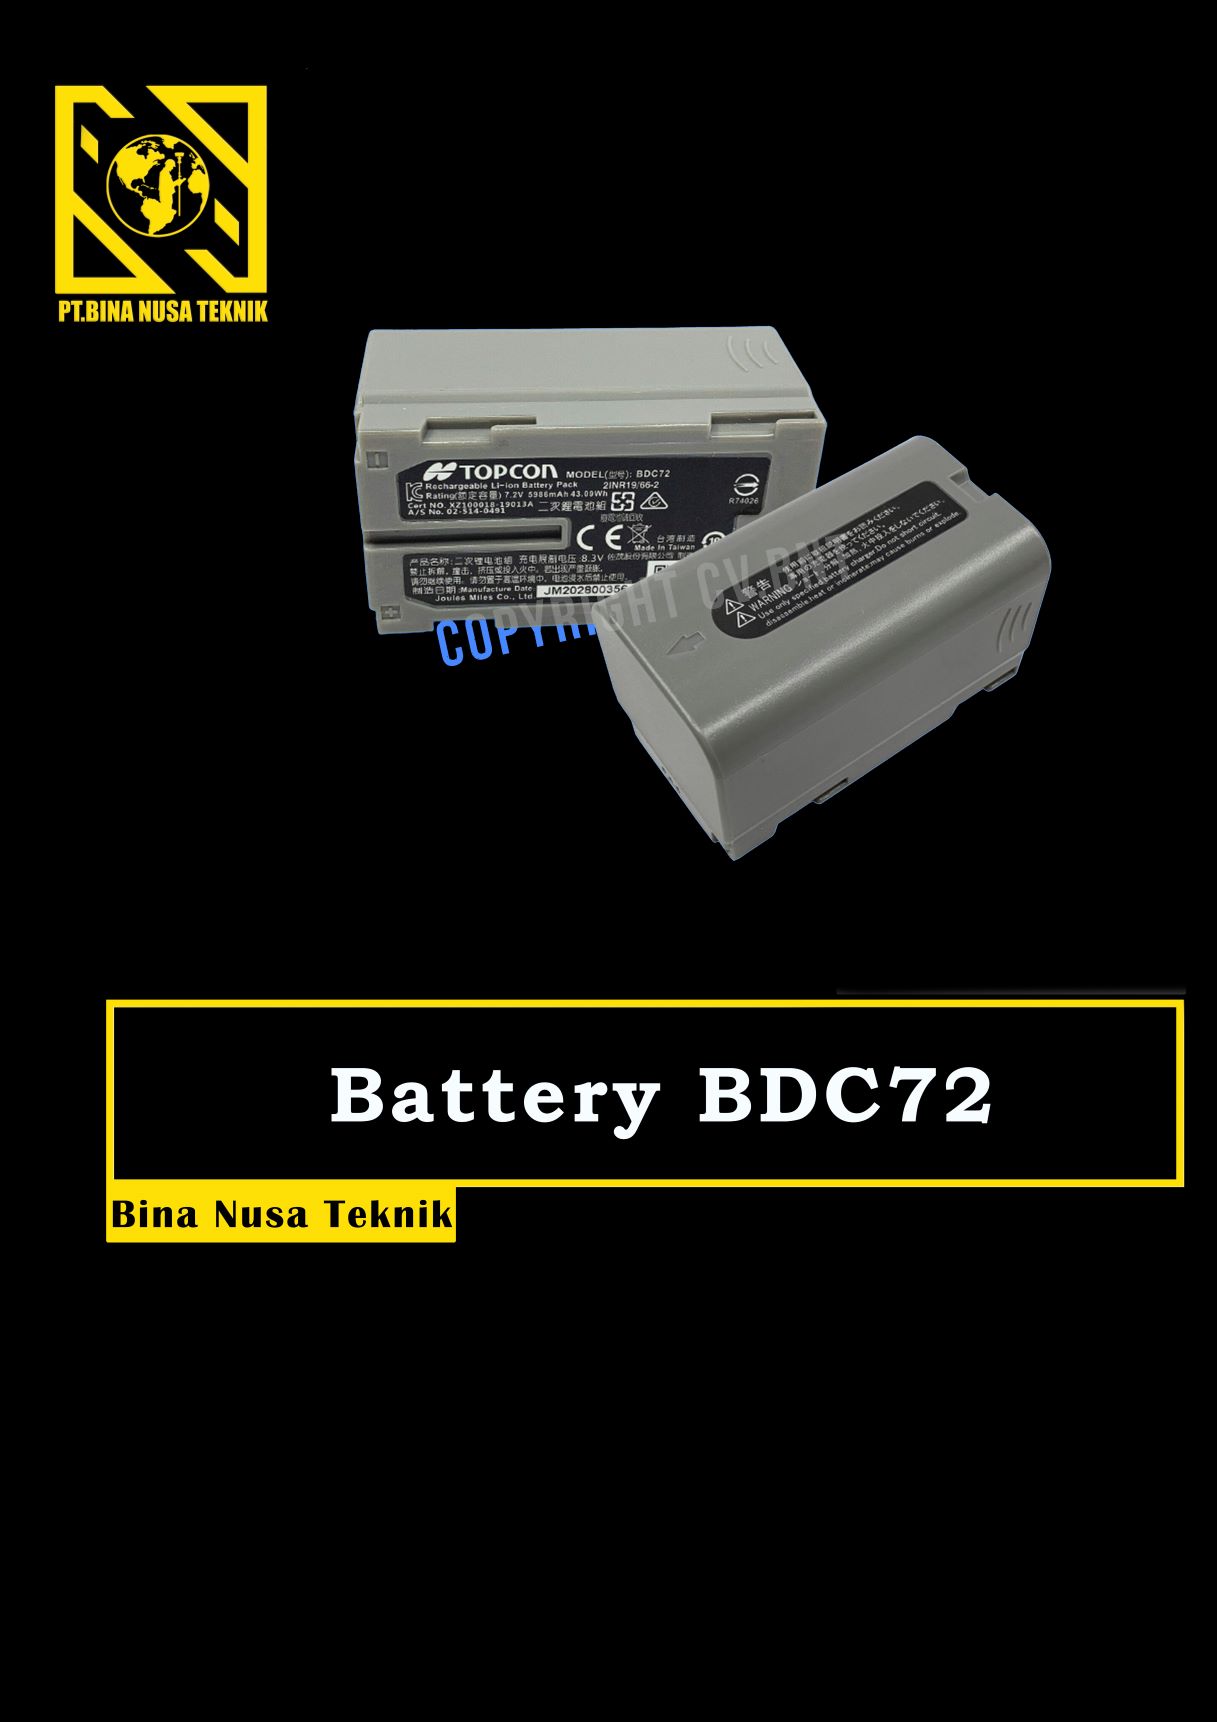 Battery BDC72